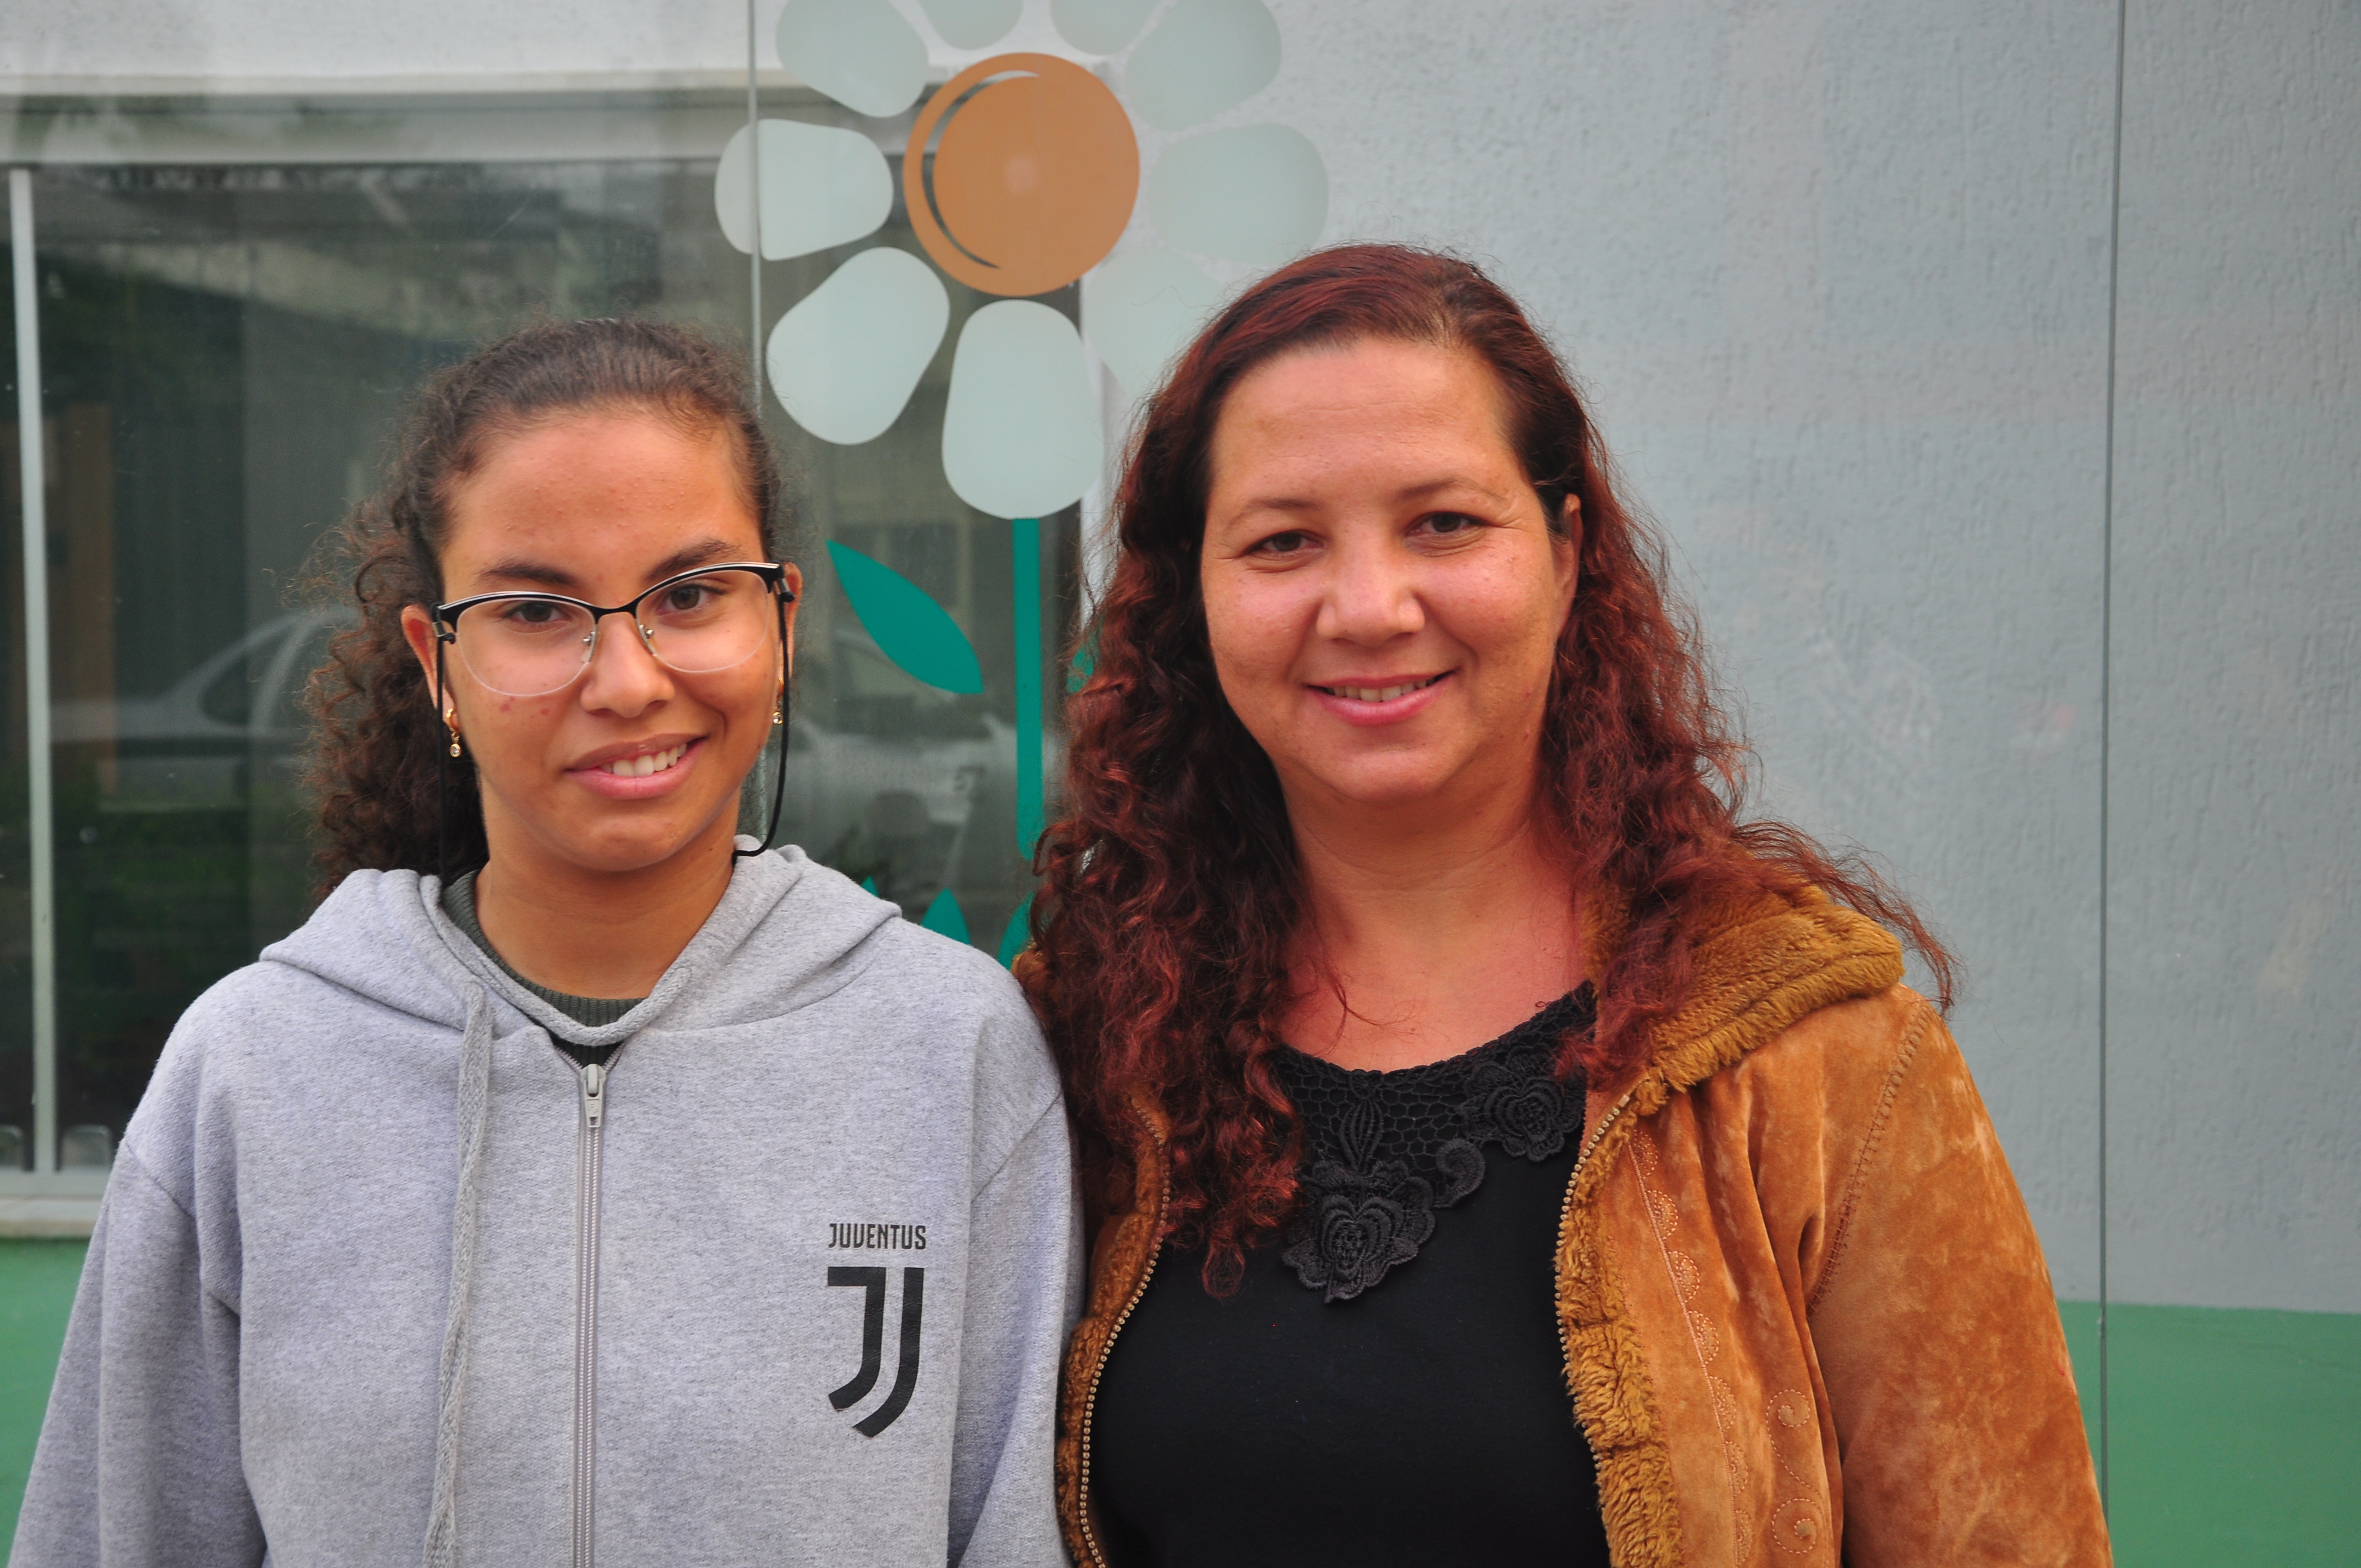 Maria Vitória e a mãe, Gilmara Junia Campos posadas uma ao lado da outra par uma foto em frente à fachada da APAE, clínica onde Maria Vitória tem acompanhamento médico e social. As duas sorriem.